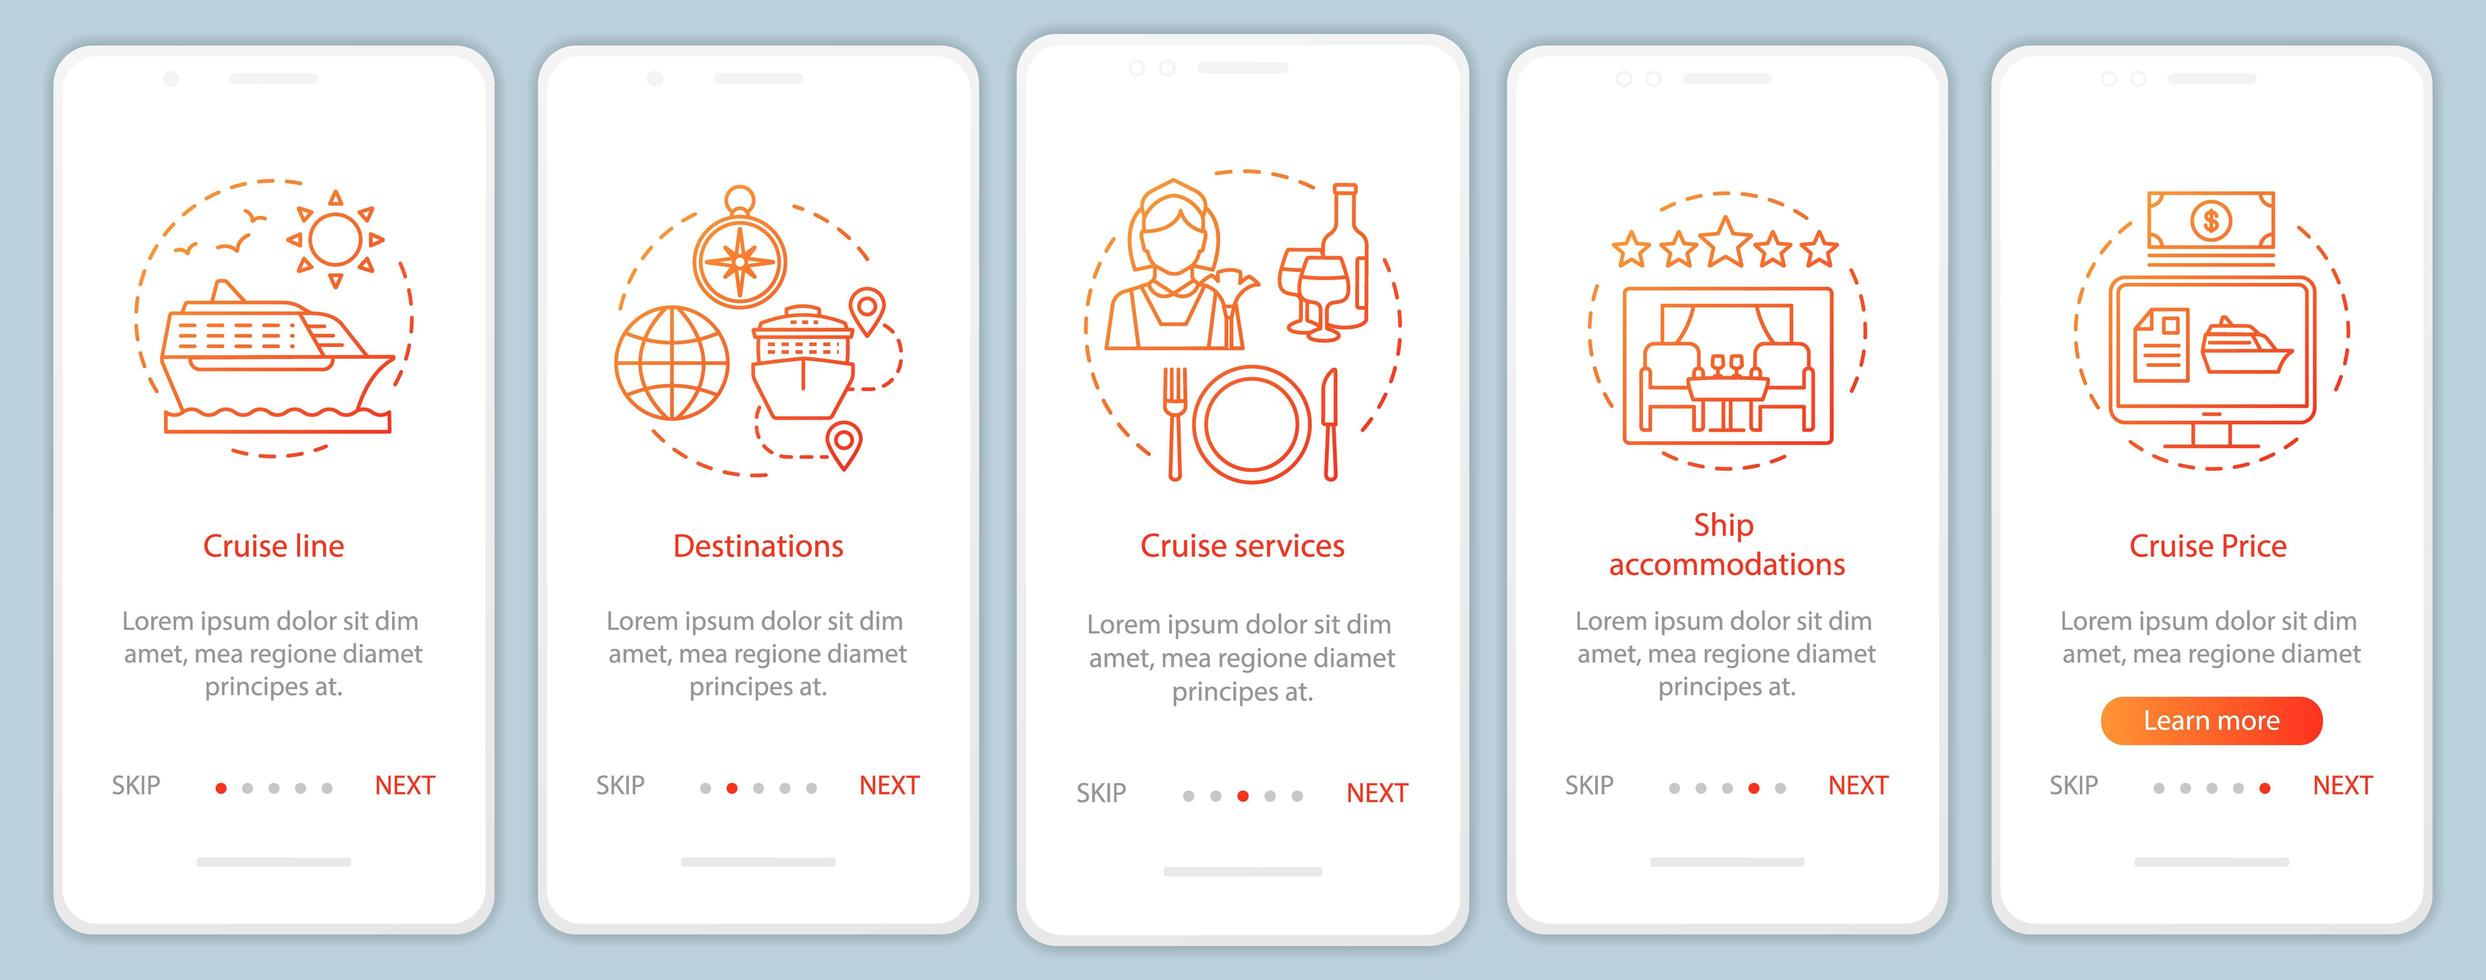 pagina dell'app per dispositivi mobili di onboarding con informazioni sulla crociera vettore